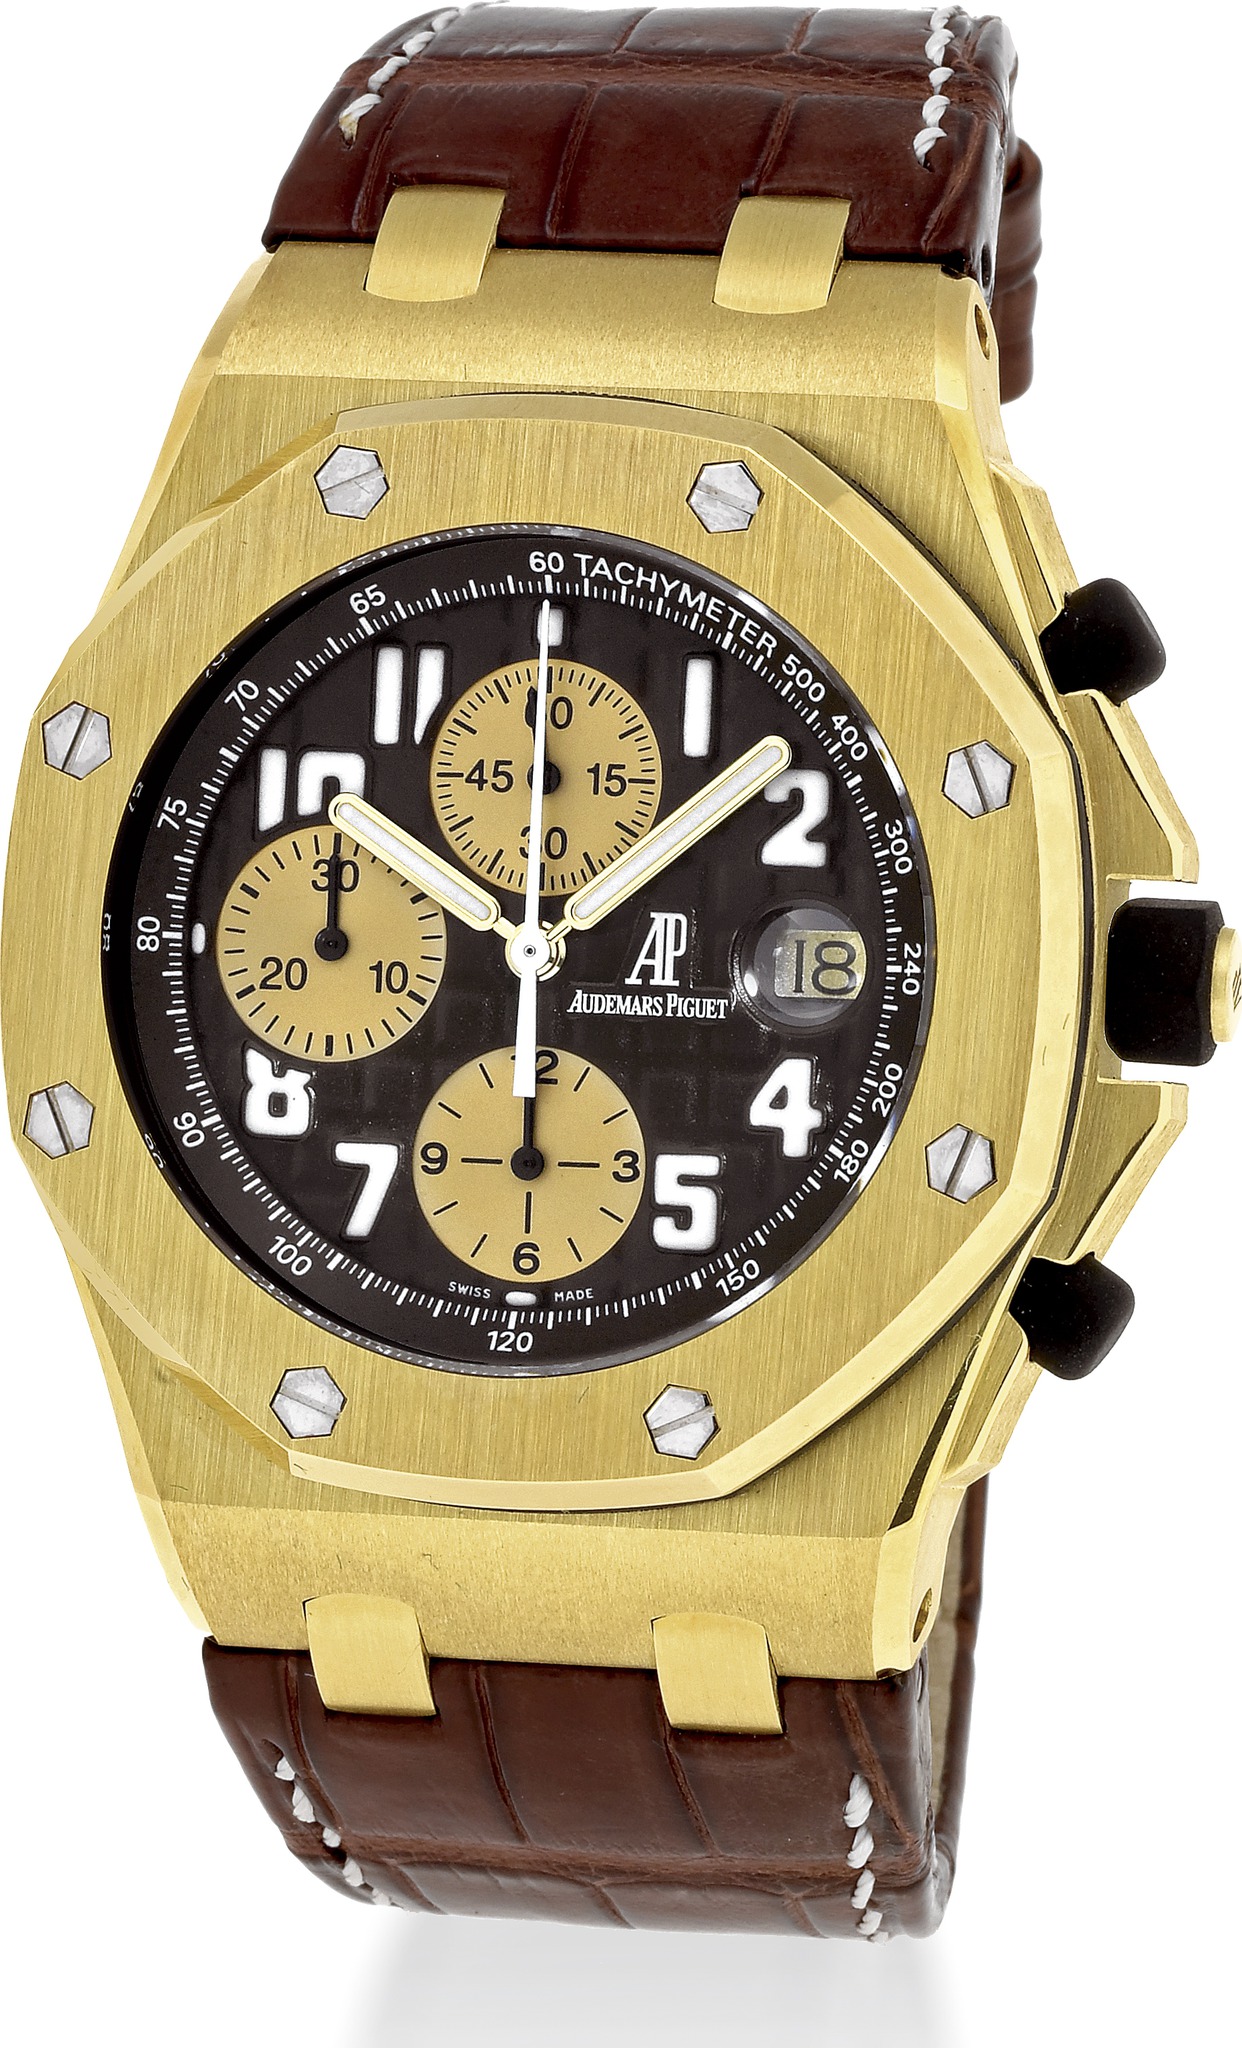 Audemars Piguet Royal Oak Offshore Arnold Schwarzenegger Yellow Gold watch REF: 26007BA.OO.D088CR.01 - Click Image to Close